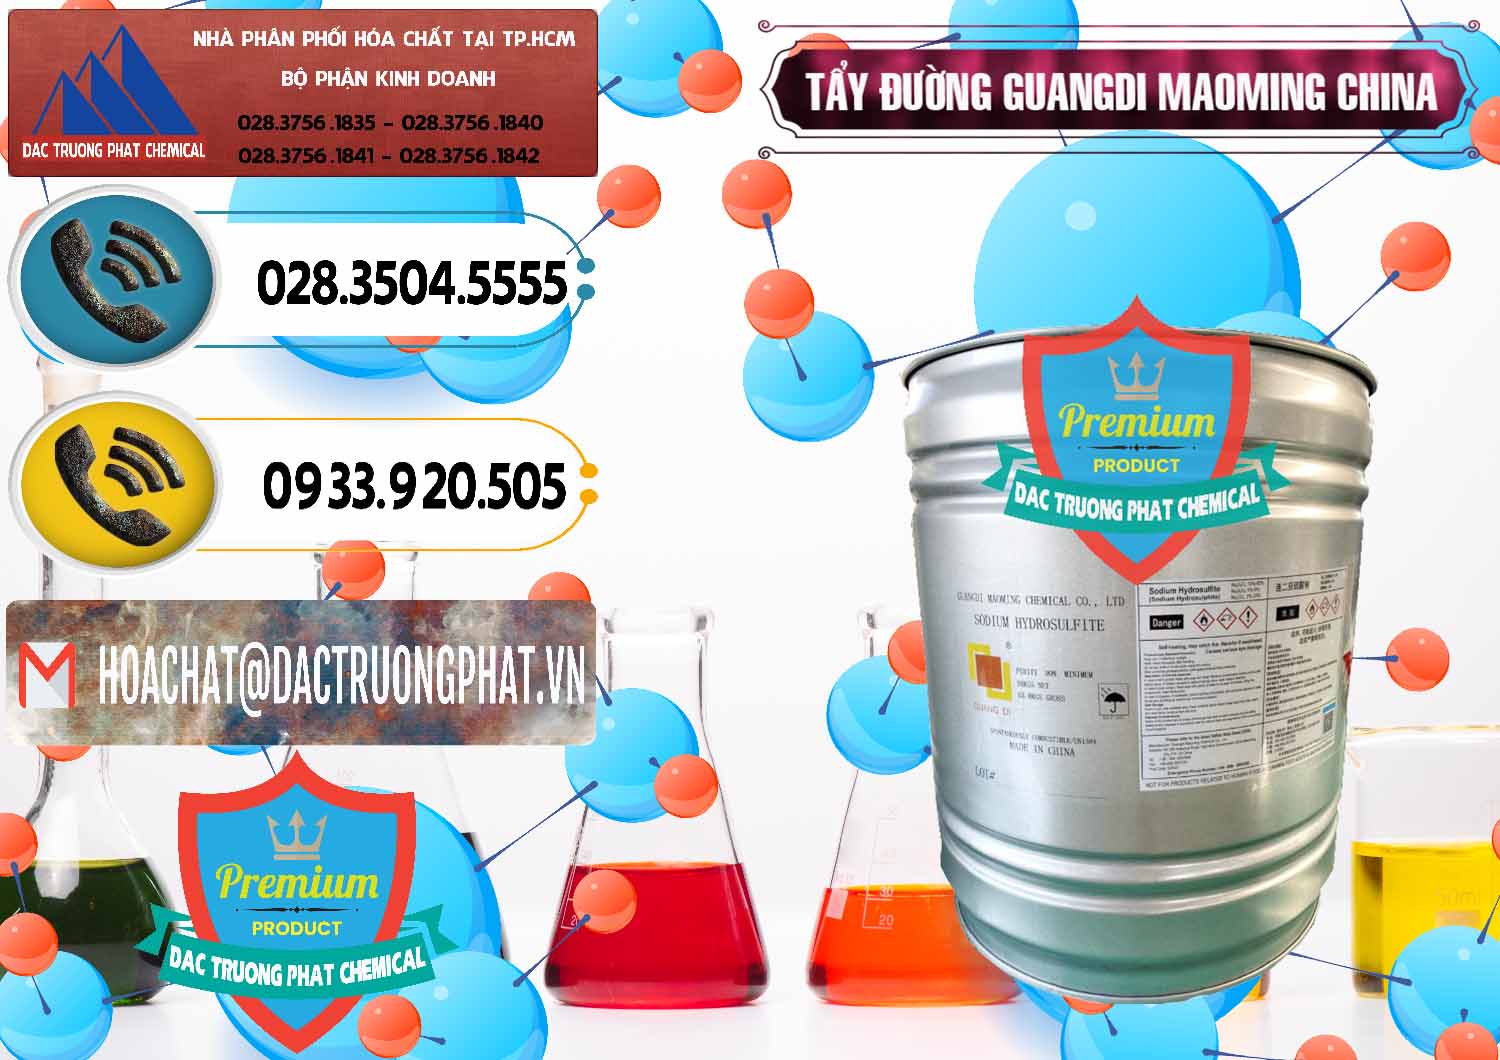 Cty bán _ cung ứng Tẩy Đường - NA2S2O4 Guangdi Maoming Thùng Xám Trung Quốc China - 0402 - Đơn vị cung ứng & phân phối hóa chất tại TP.HCM - hoachatdetnhuom.vn